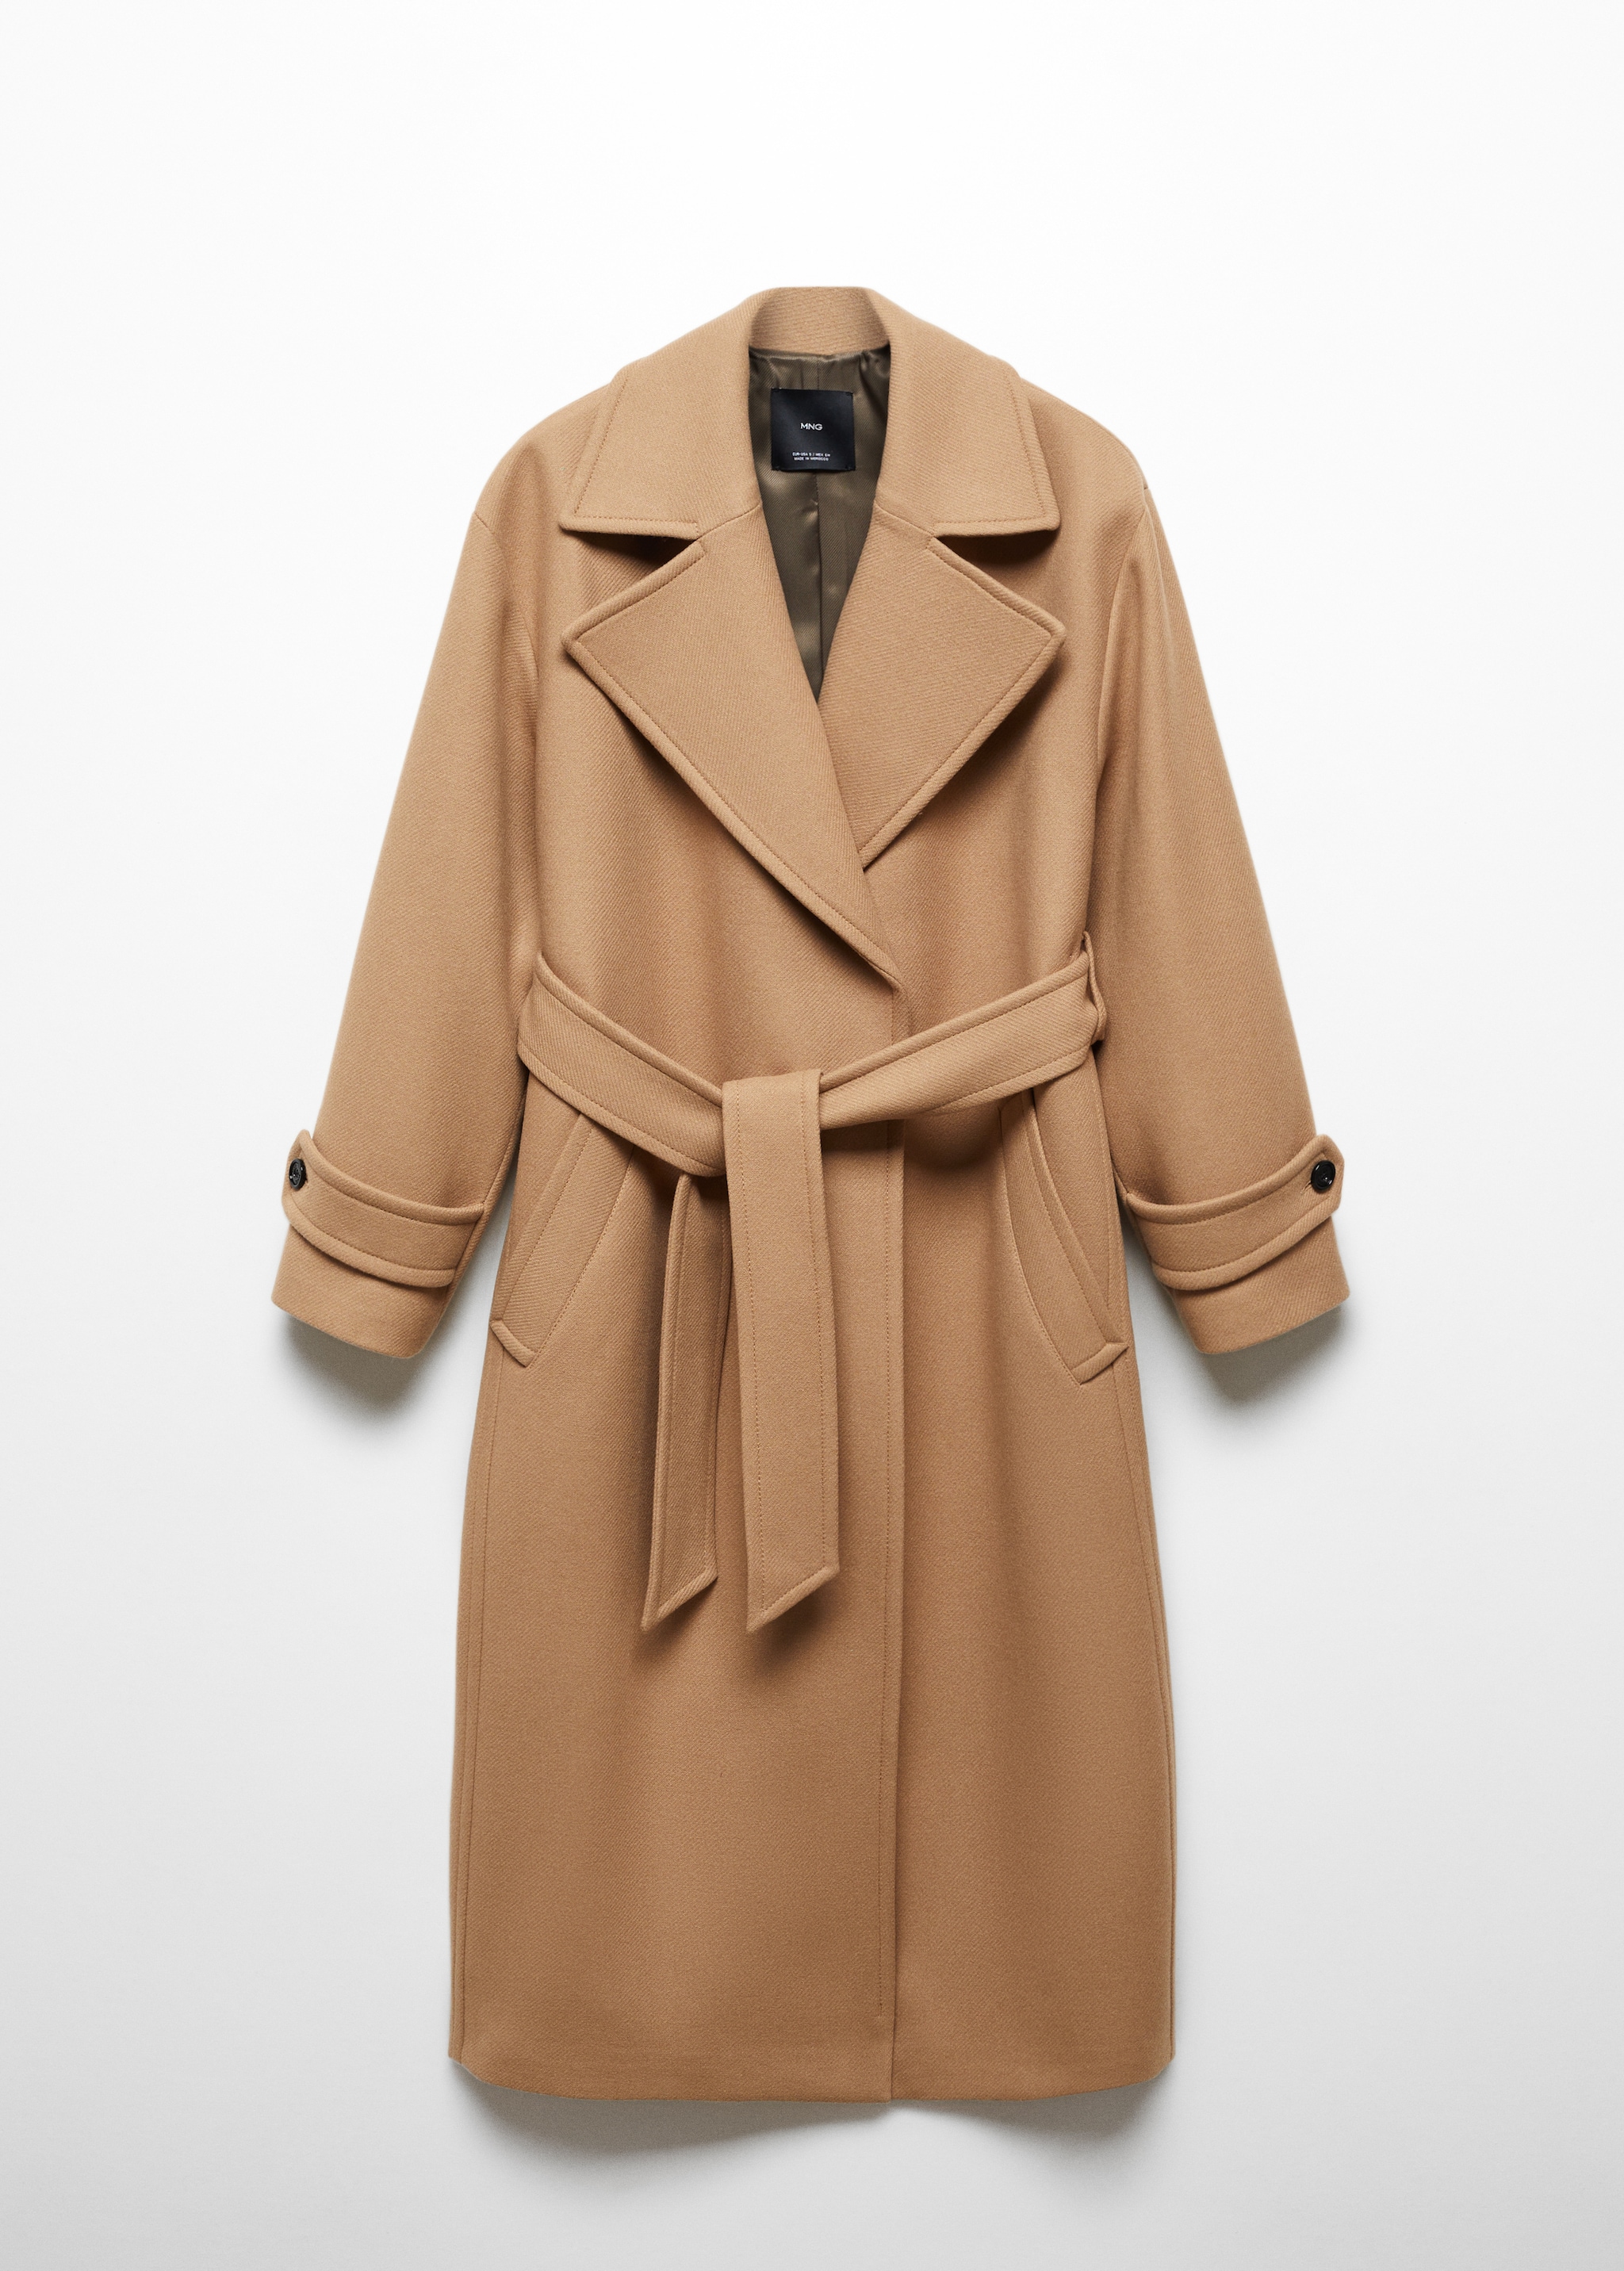 Пальто из шерсти Manteco с макси-лацканами - Изделие без модели